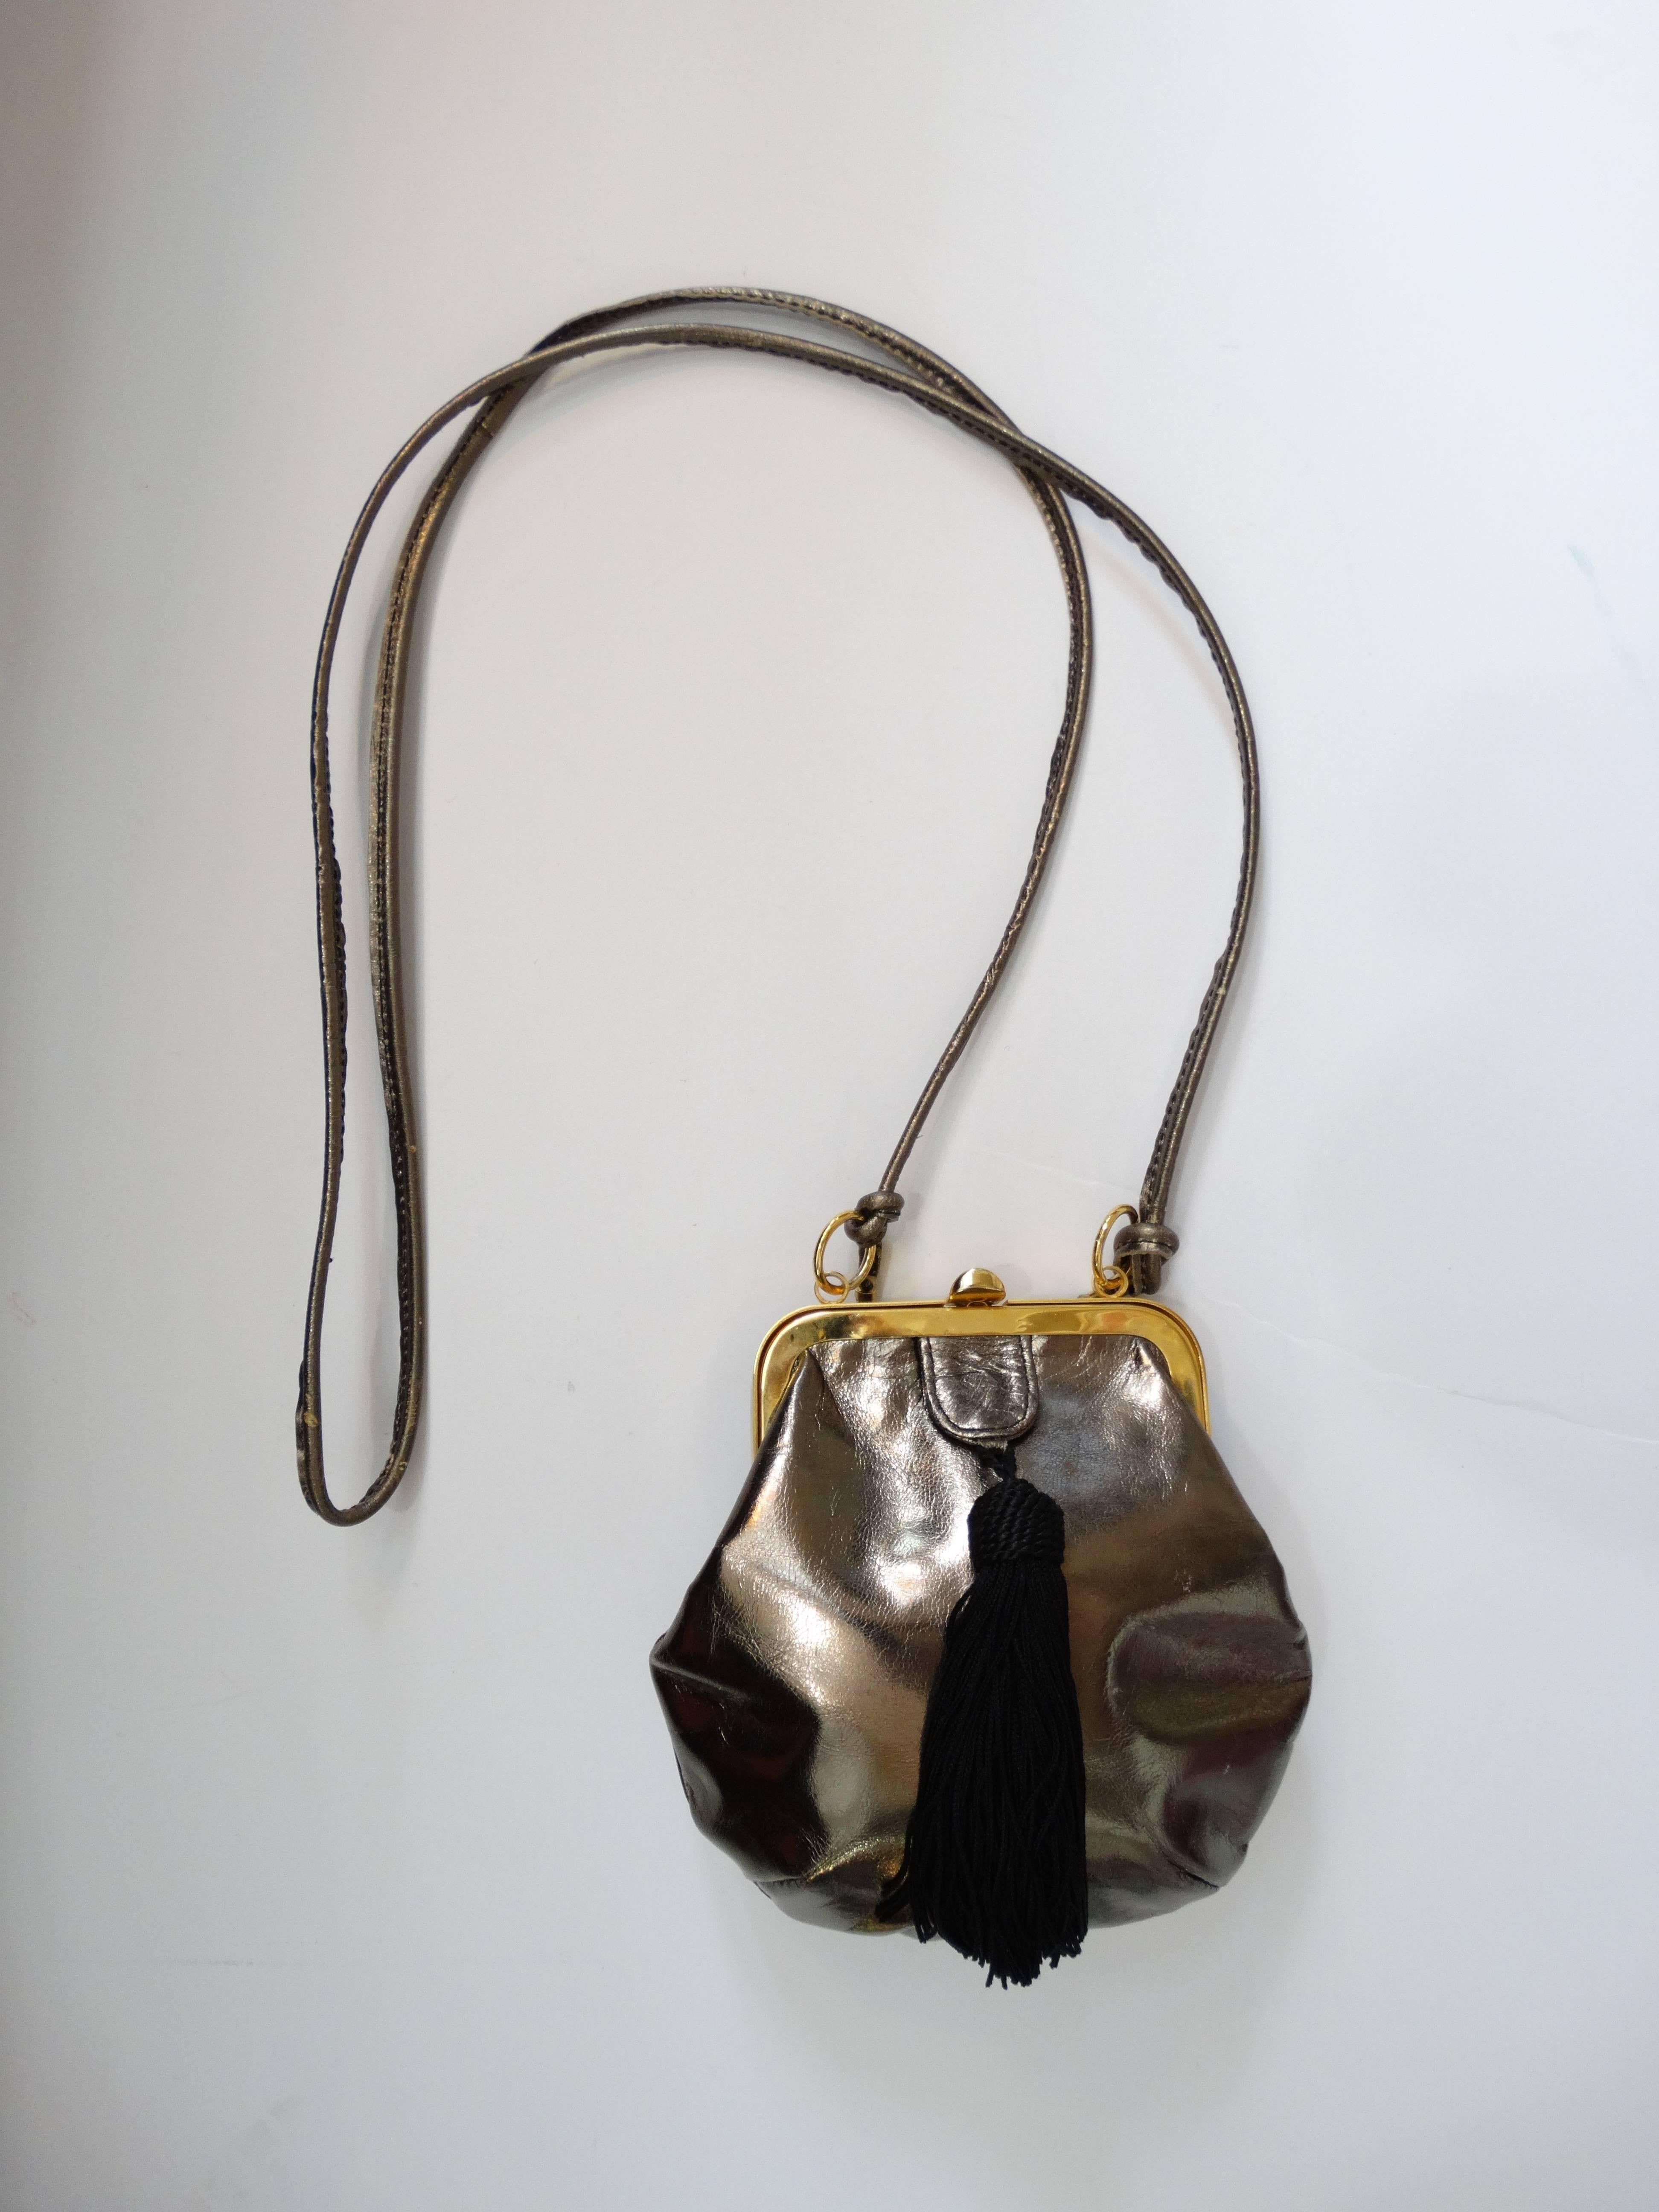 Die bezauberndste kleine Abendtasche von Valentino! Hergestellt aus silberfarbenem Metallic-Leder, kontrastiert mit goldenen Metallbeschlägen! Mit schwarzer, seidiger Kordel und Quaste. Der Riemen wird an den beiden Sprengringen auf beiden Seiten